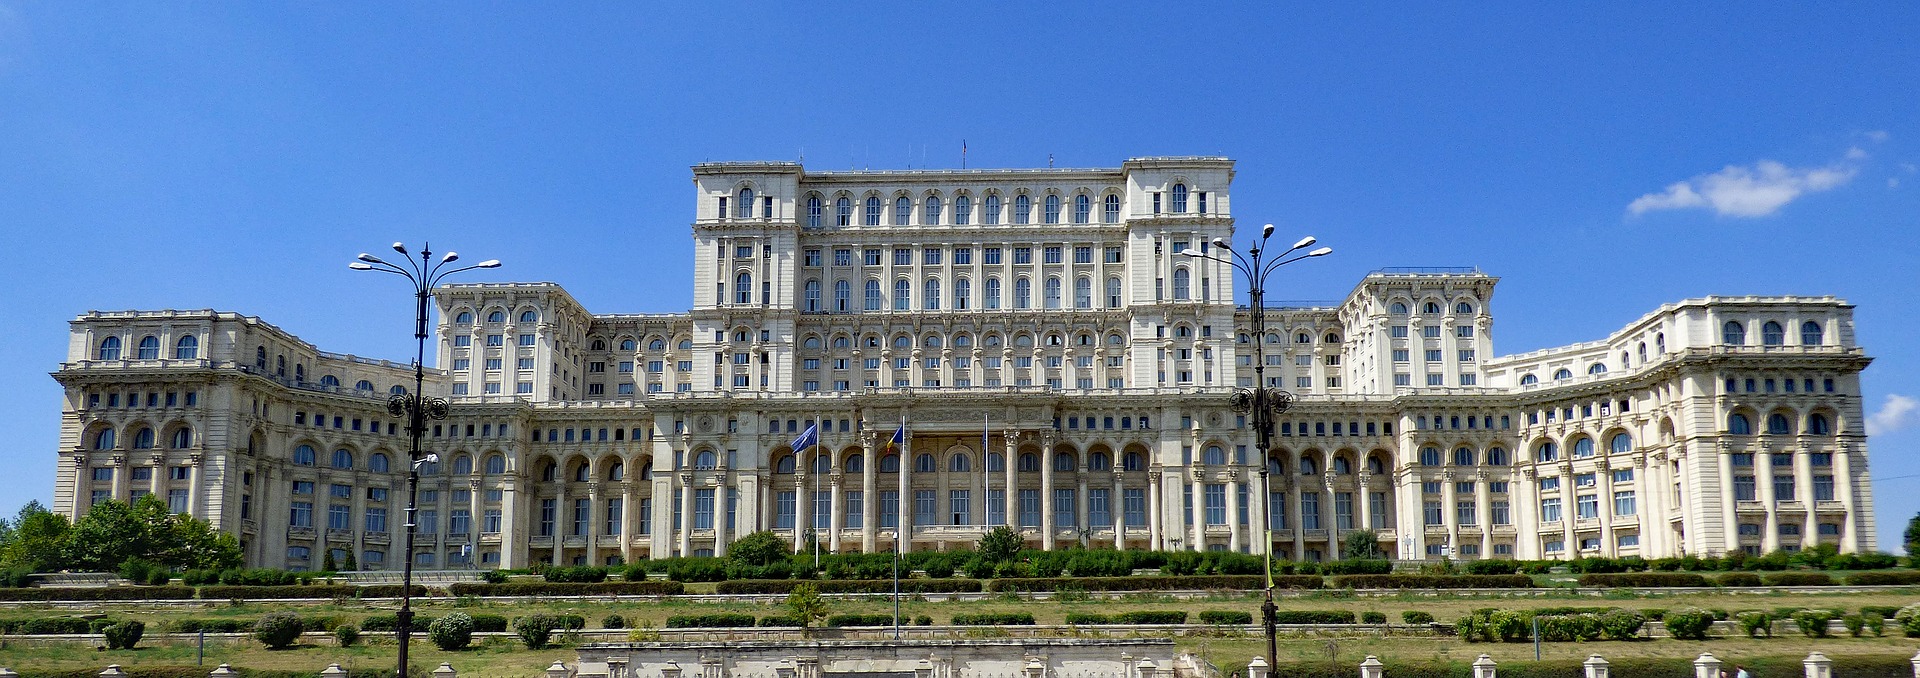 Roemenië - Boekarest